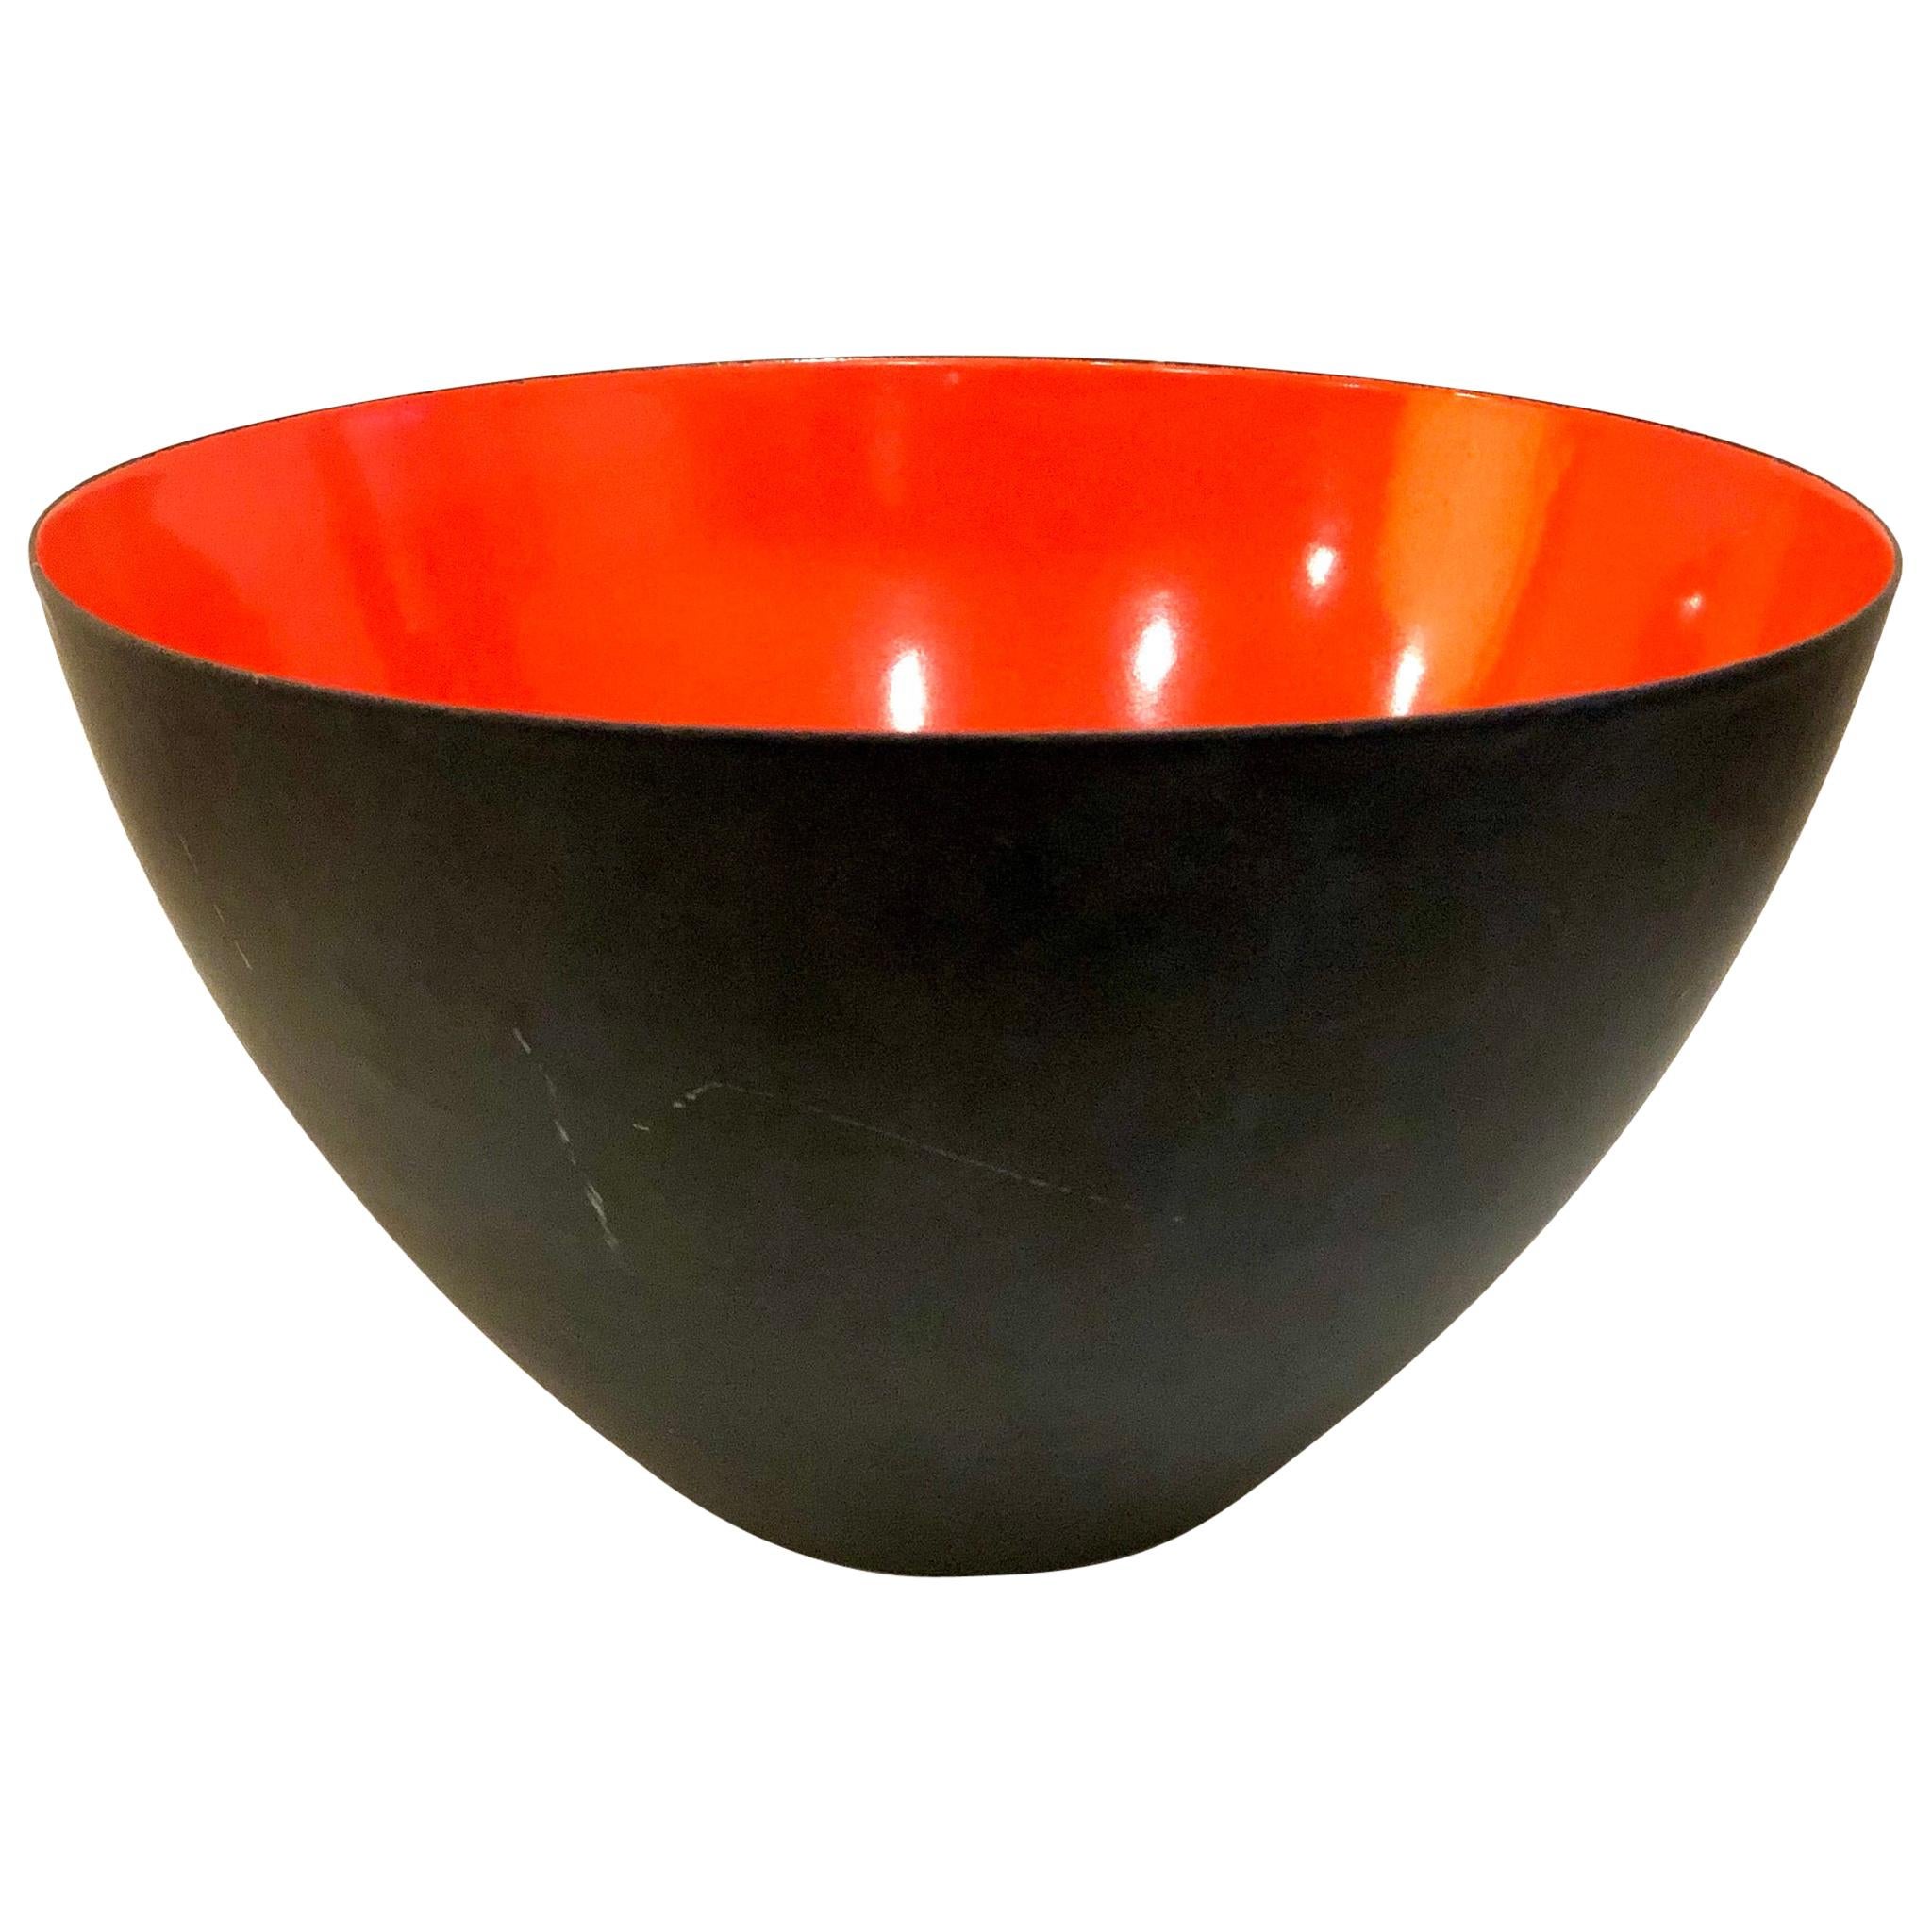 Danish Modern Orange Krenit Bowl by Herbert Krenchel for Torben Orskov